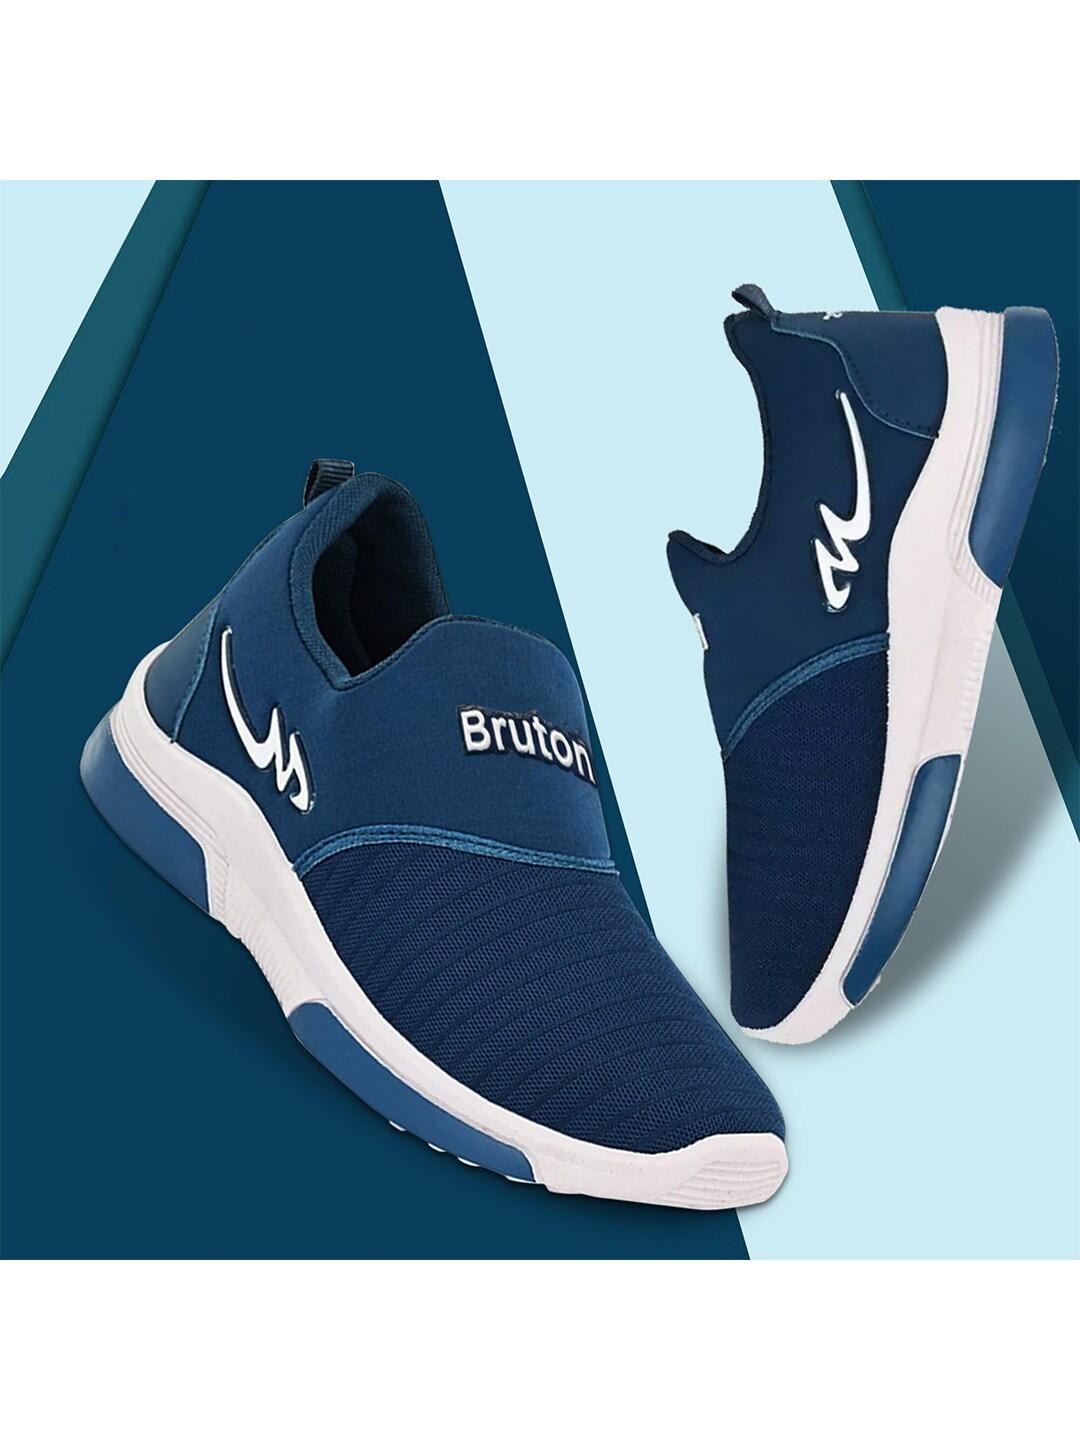 bruton-men-lightweight-mesh-running-shoes